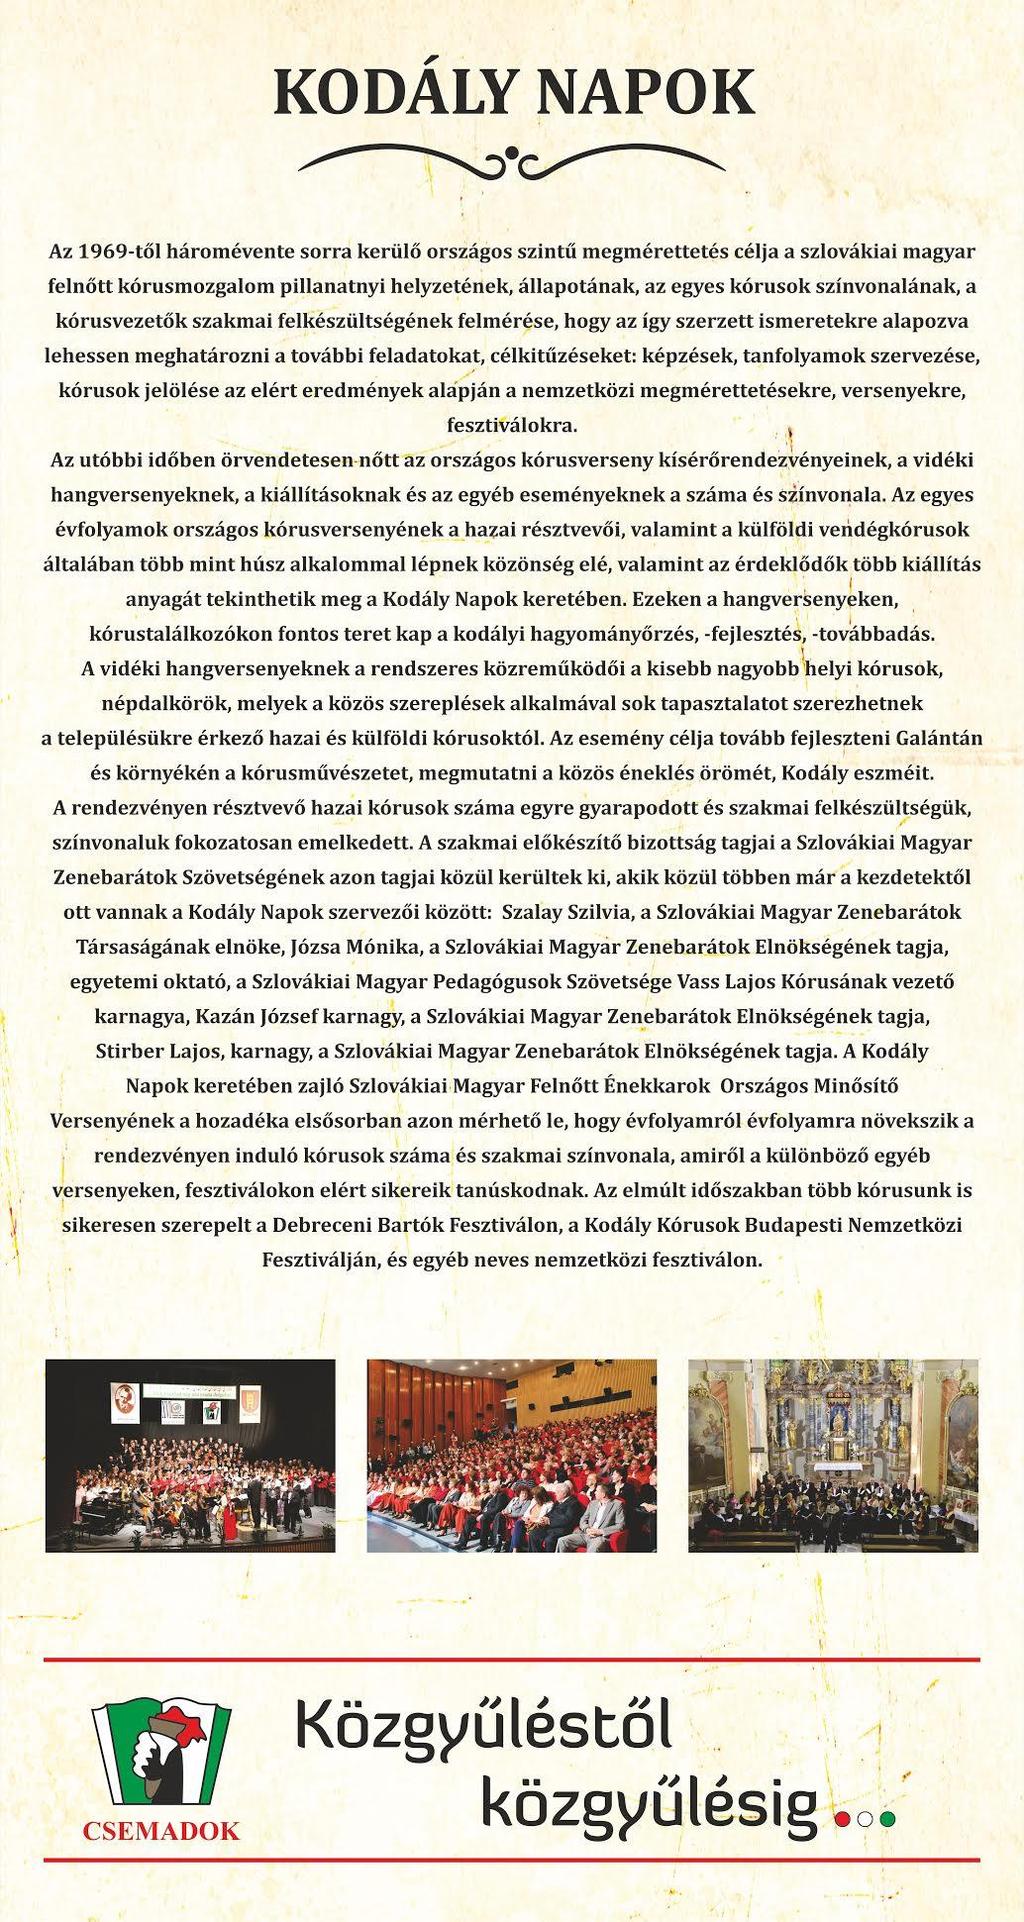 C s e ma d o k mu n kája képekben 37 Szövetségünk, a Csemadok azzal a céllal alakult, hogy összefogja a magyar kultúra iránt érdeklődő embereket, létrehozzza a kulturális csoportokat és megteremtse